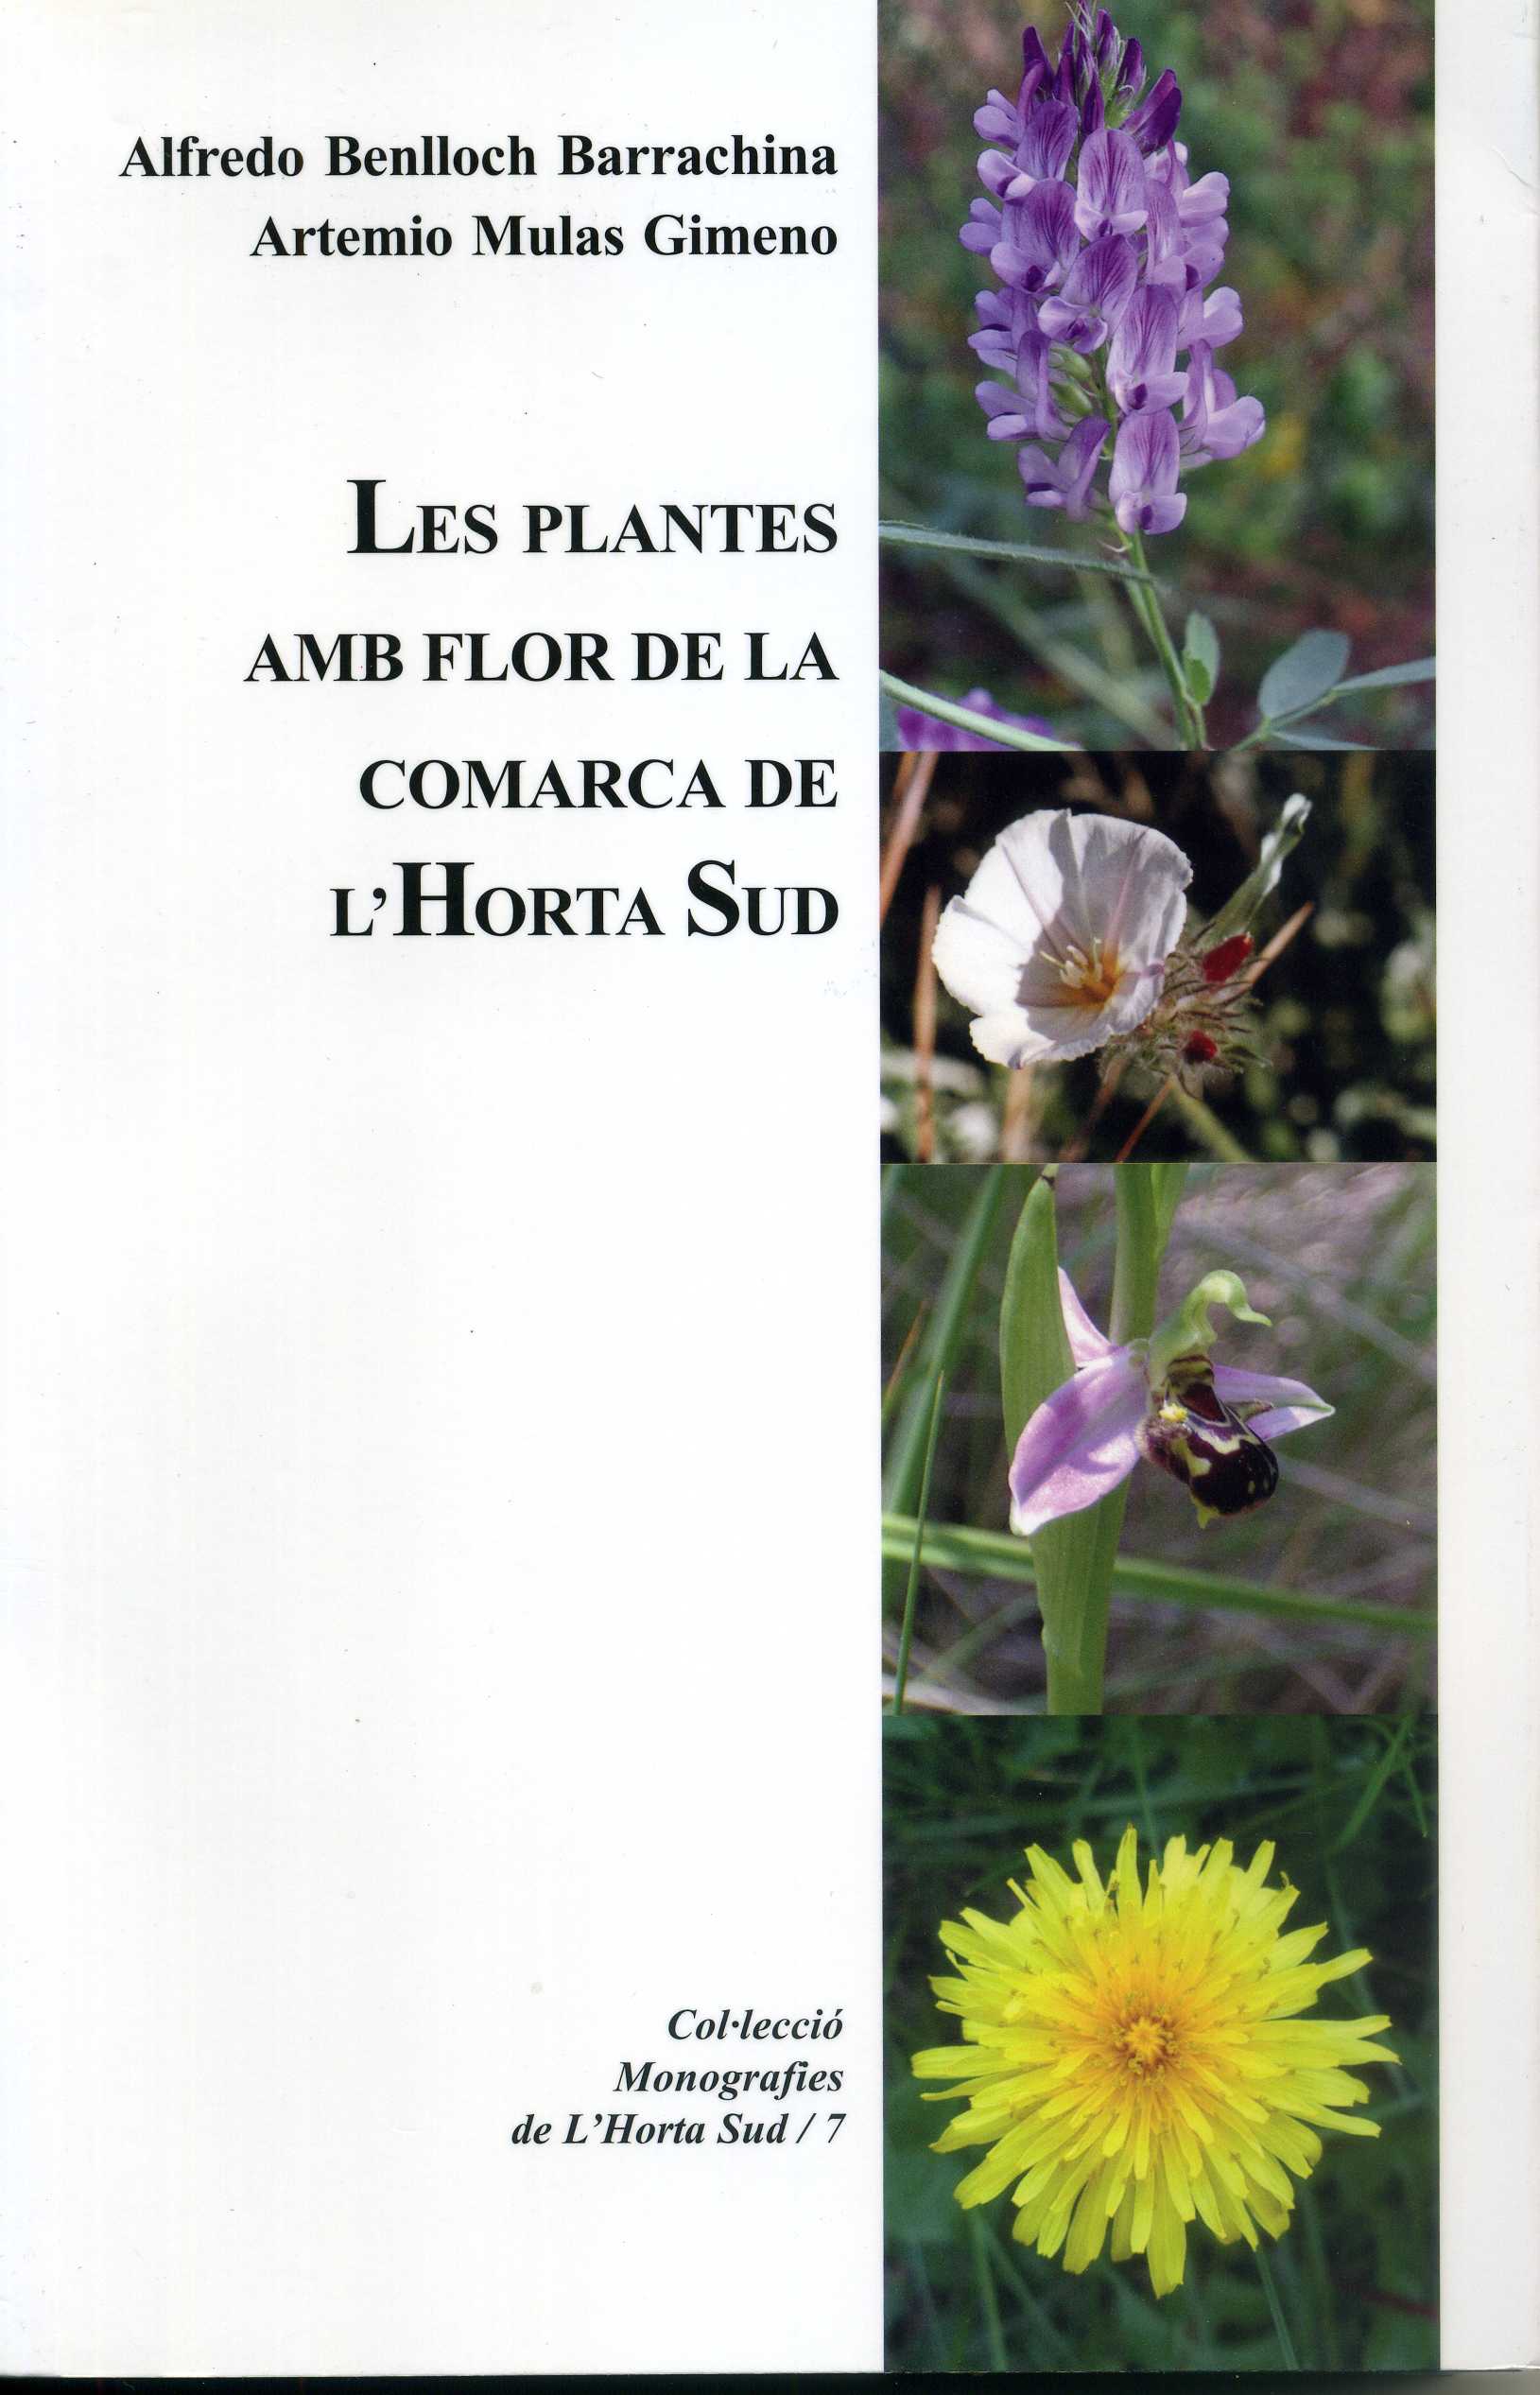 Les plantes amb flor de la comarca de l'Horta Sud